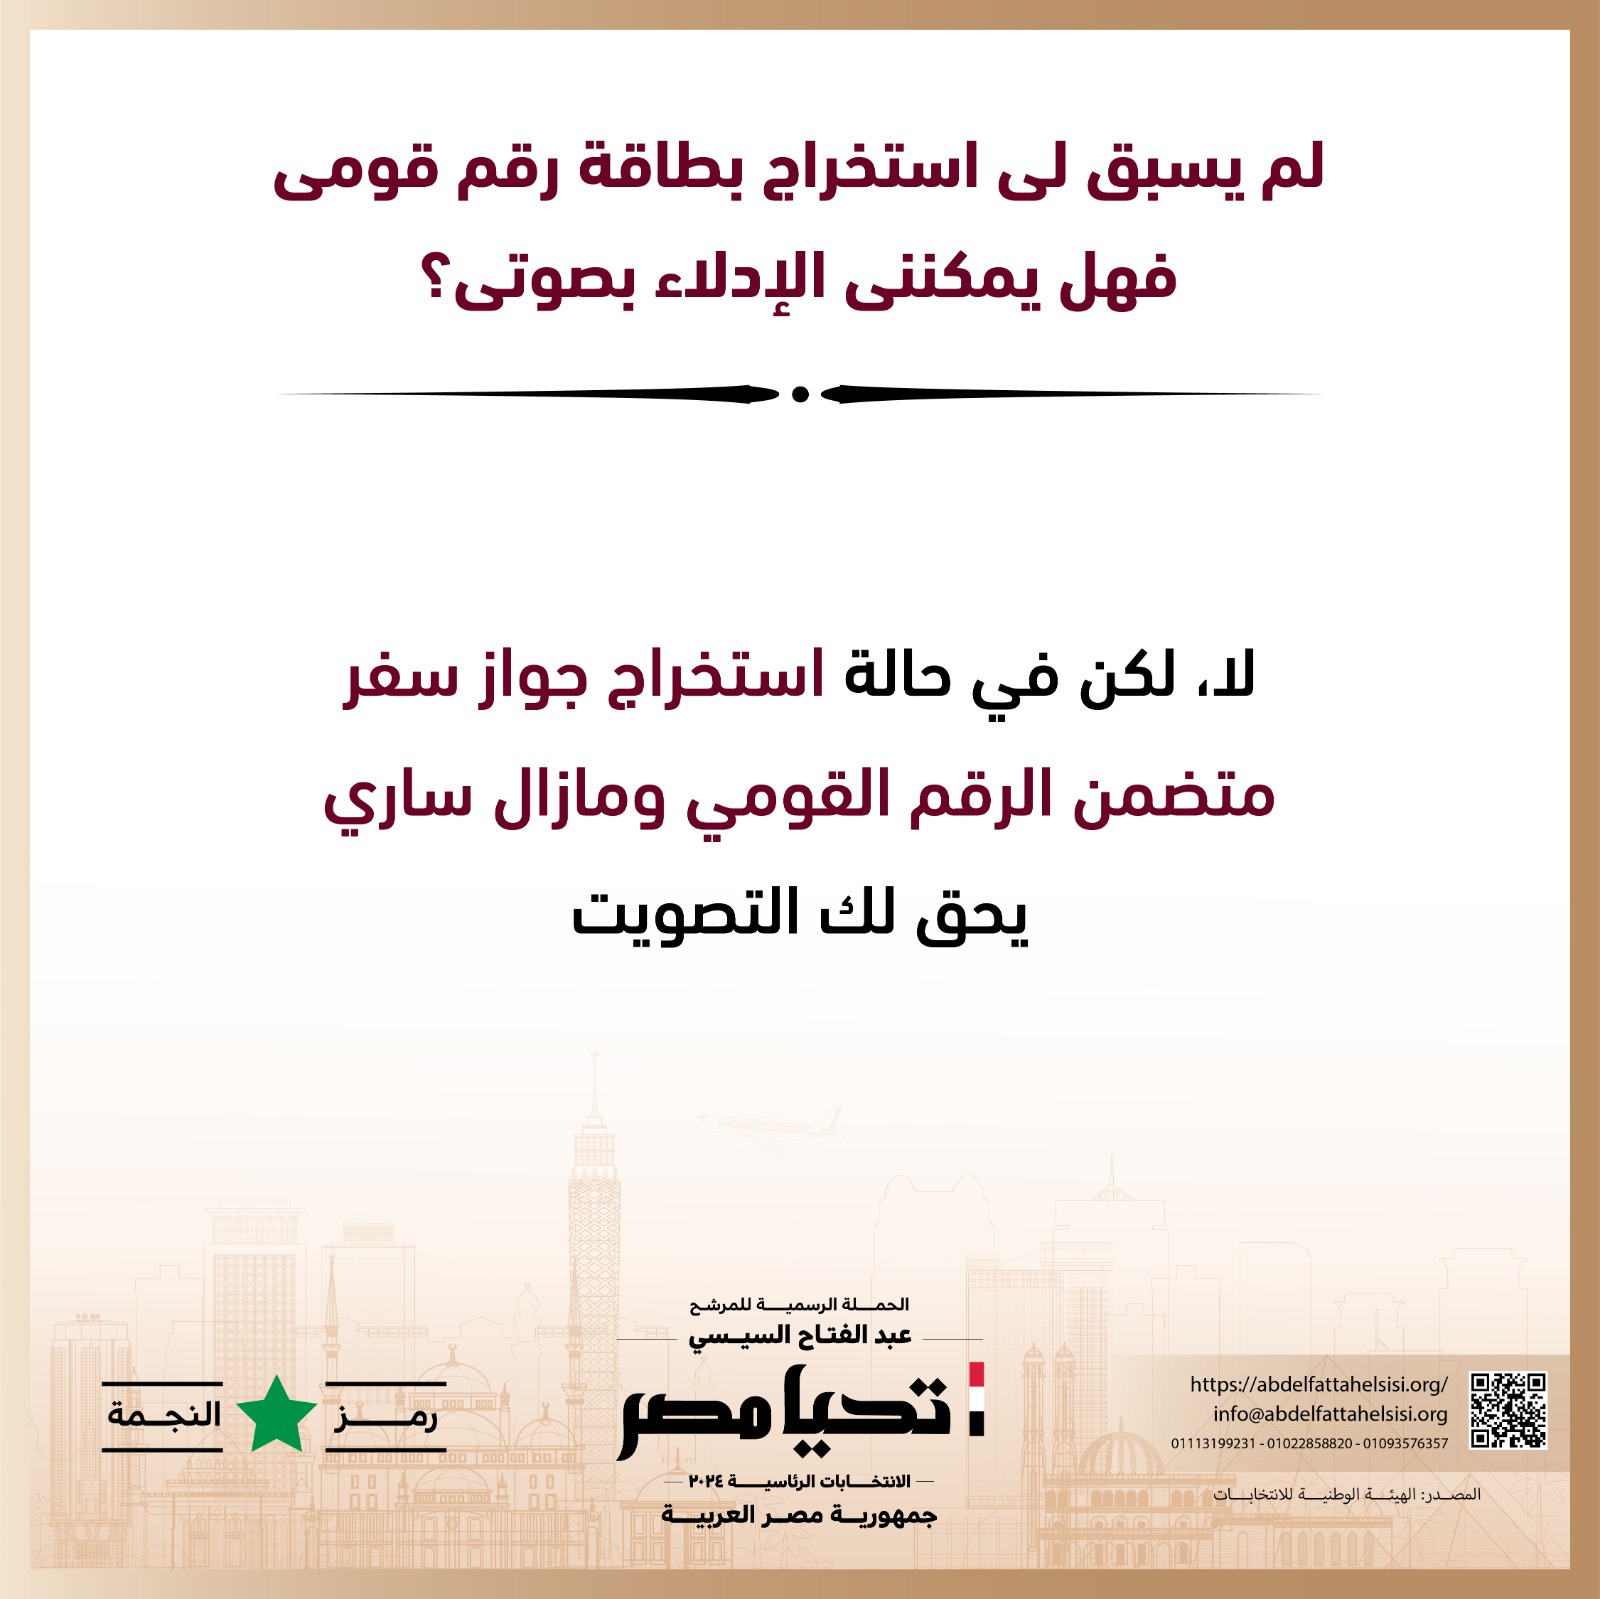 الحملة الرسمية للمرشح عبد الفتاح السيسي  (9)